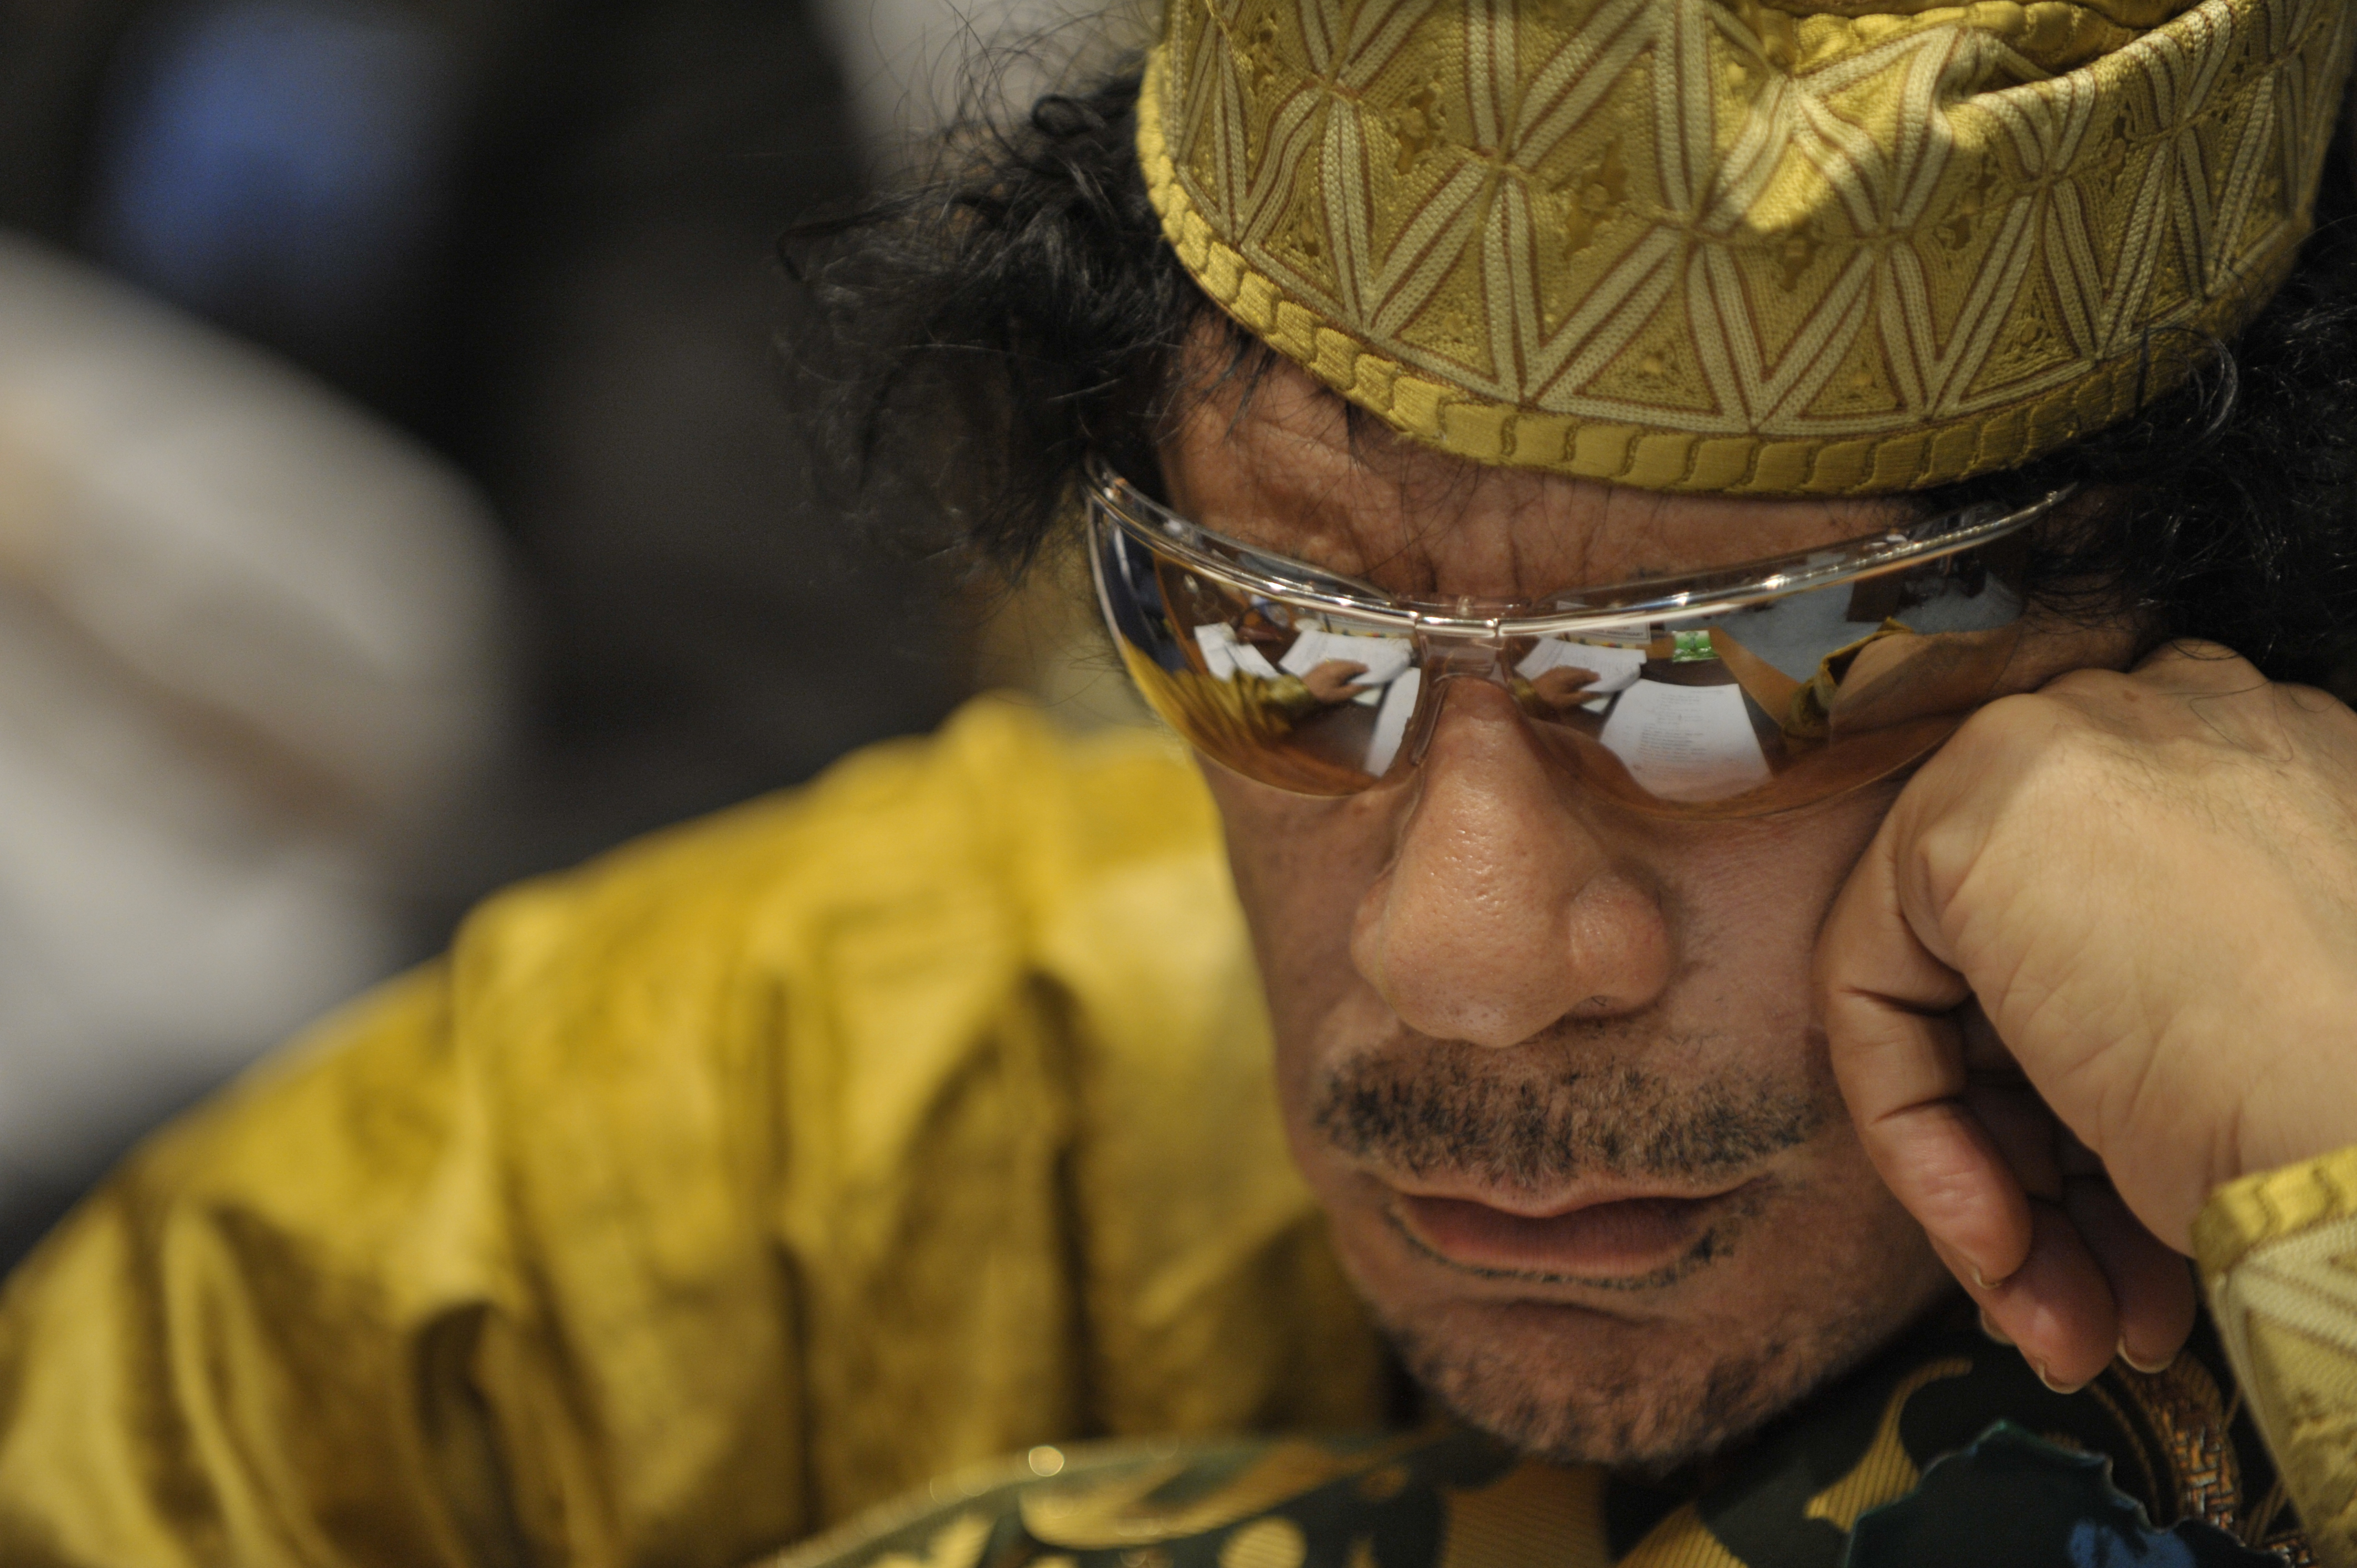 Muammar_al-Gaddafi,_12th_AU_Summit,_090202-N-0506A-324 - Wiki Commons